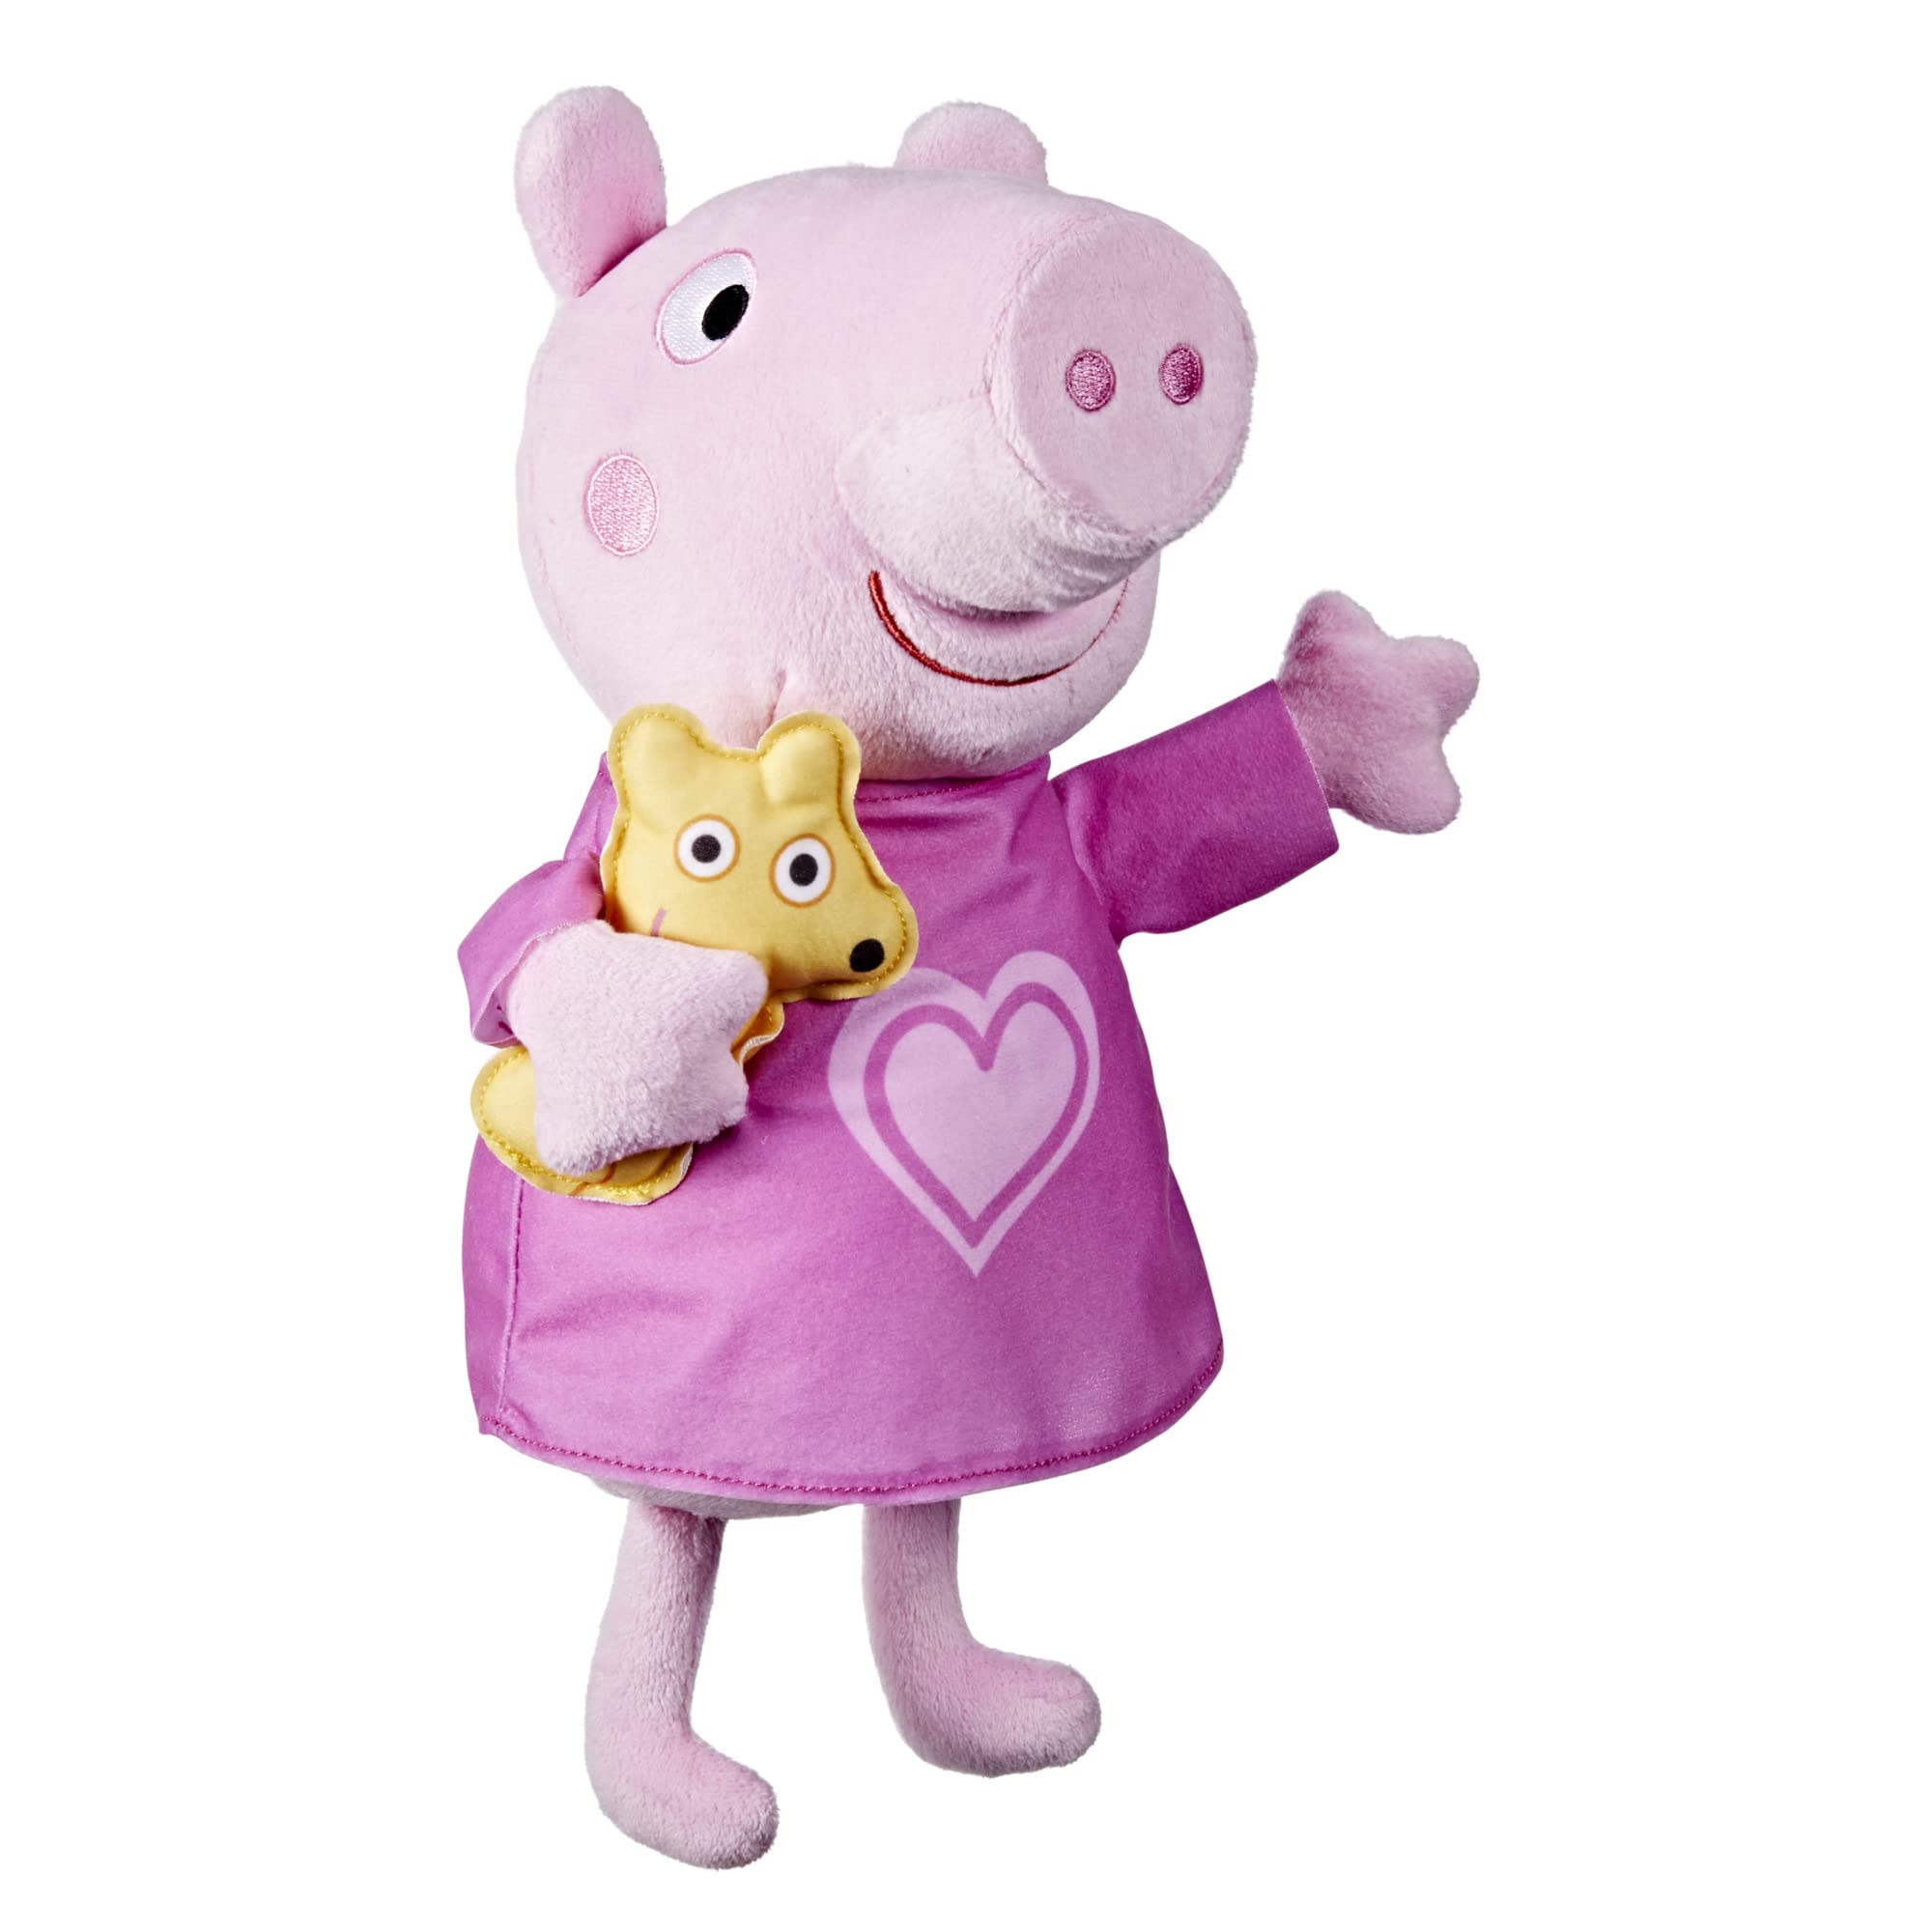 Play-Doh F3777 Bear Peppa Pig Peppa's Bedtime Wiegenlieder singende Plüschpuppe mit Teddybär-Zubehör, 3 Lieder, 3 Sätze, ab 3 Jahren, Mehrfarbig